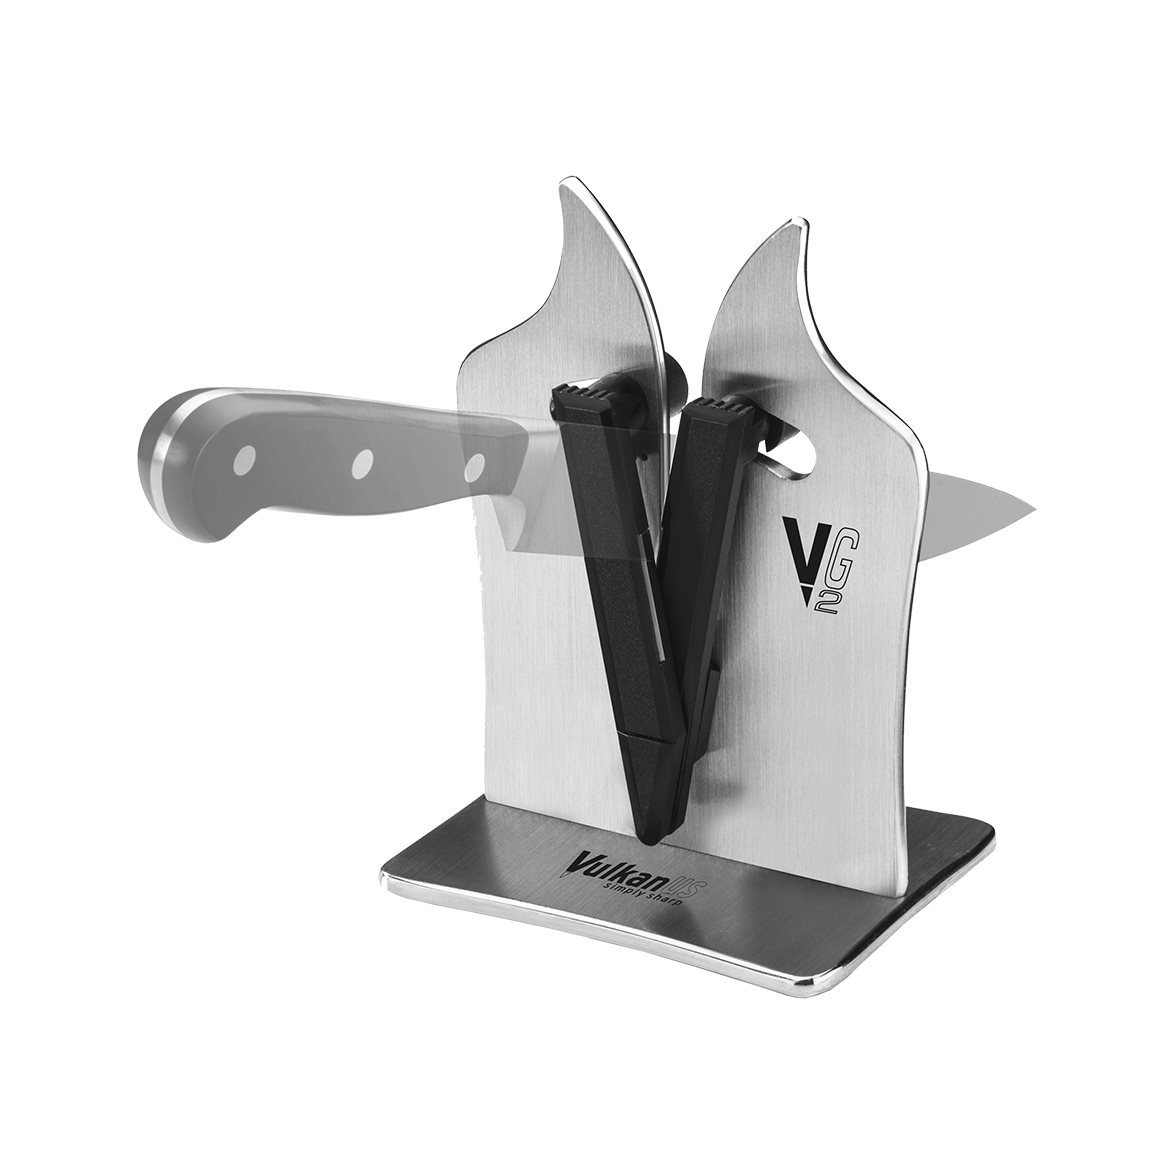 Vulkanus VG2 Professional Knife Sharpener - Vulkanus @ RoyalDesign